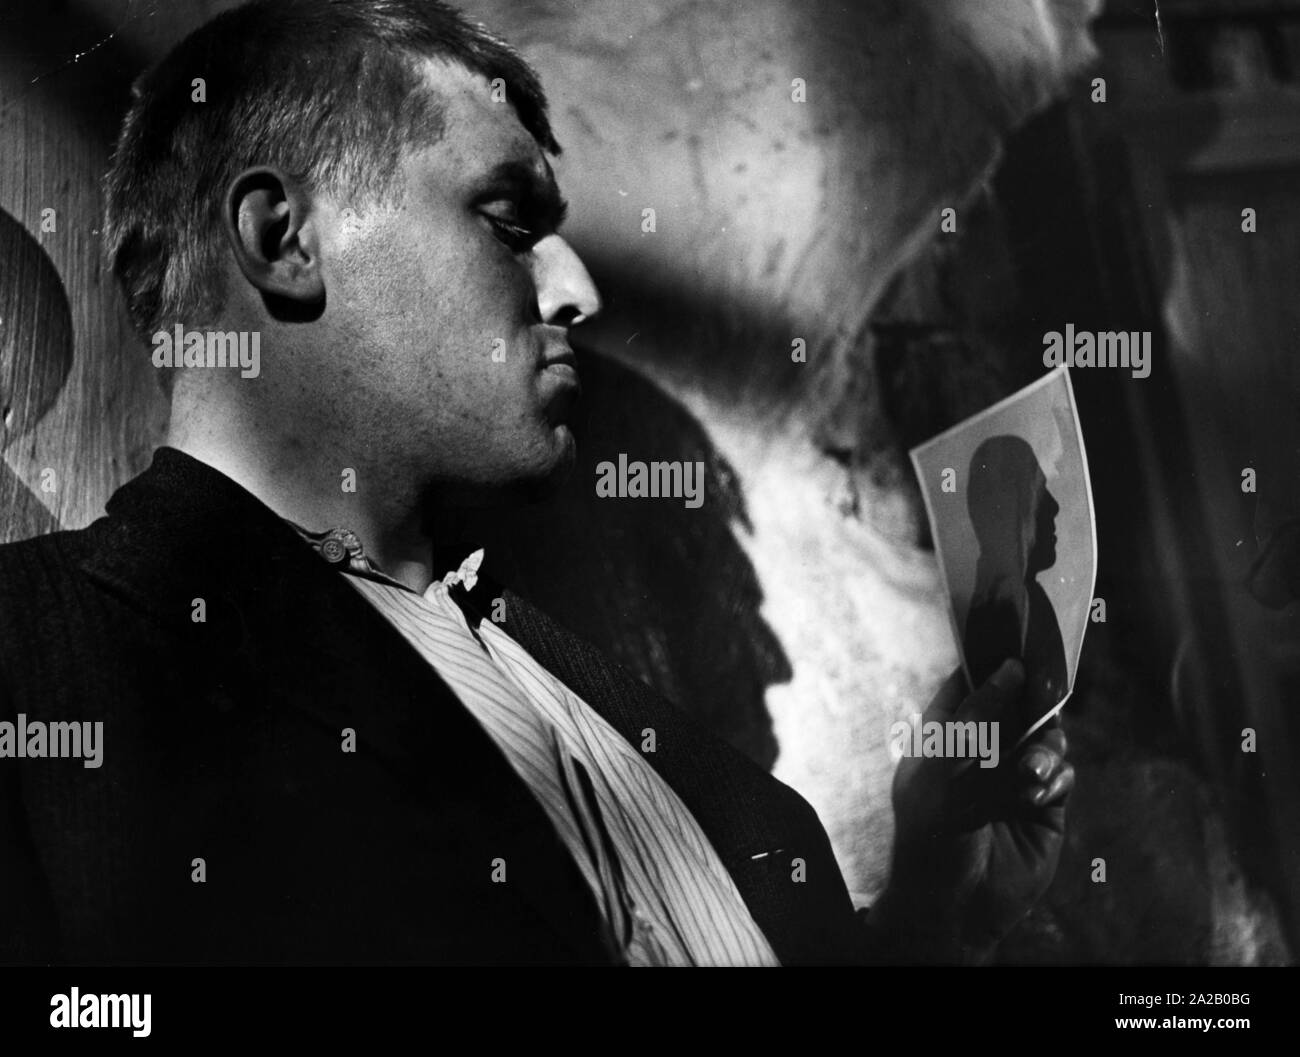 L'attore tedesco Mario Adorf guarda una foto di La (presunta) assassino di massa Bruno Luedtke, che egli incarna nel film "Il diavolo colpisce di notte". Foto Stock